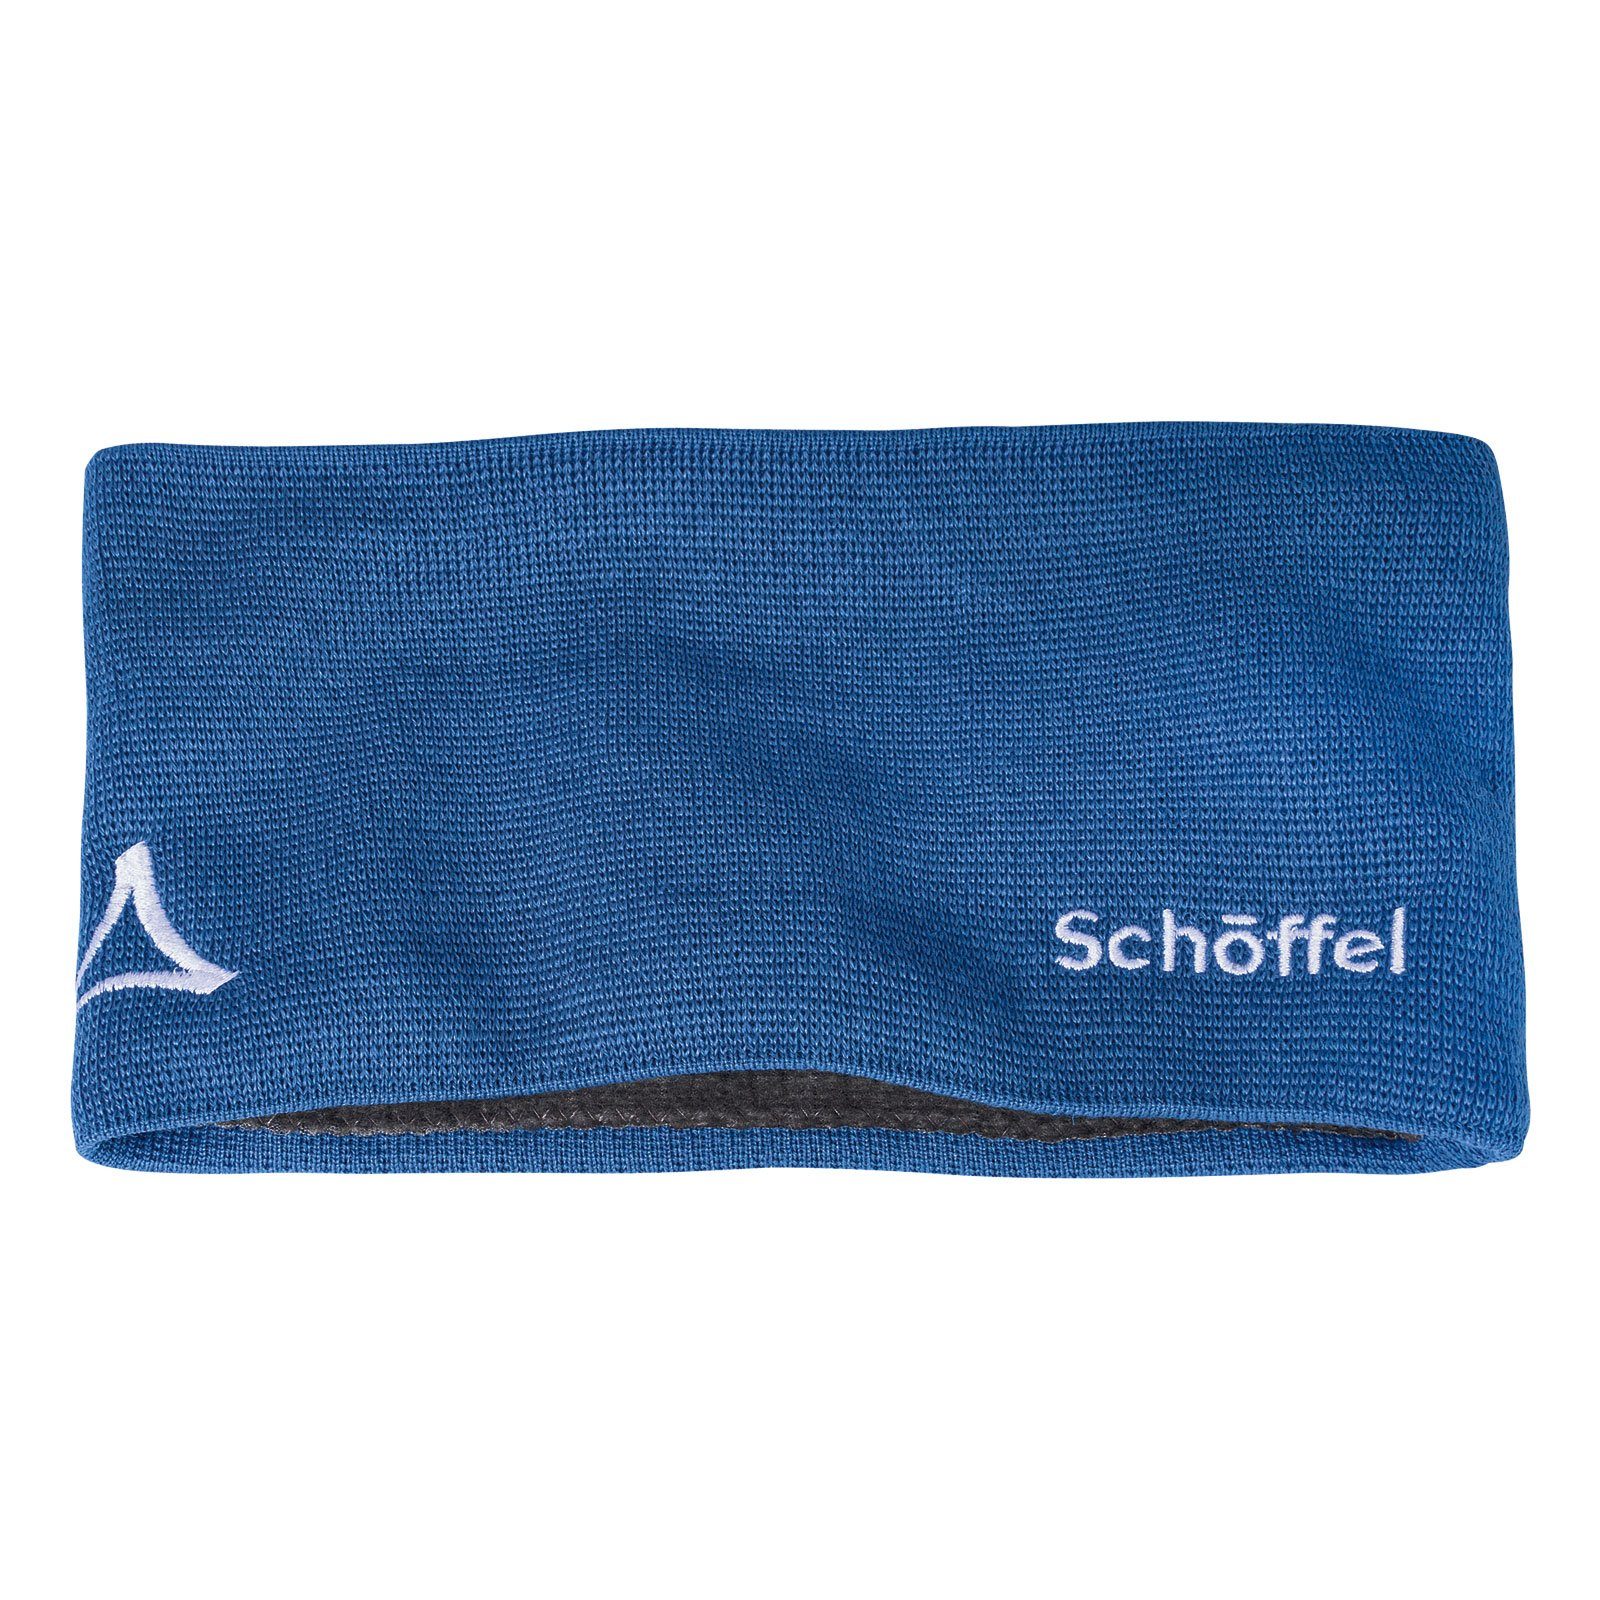 Schöffel Stirnband Knitted Headband Fornet mit Markenlogo Blau